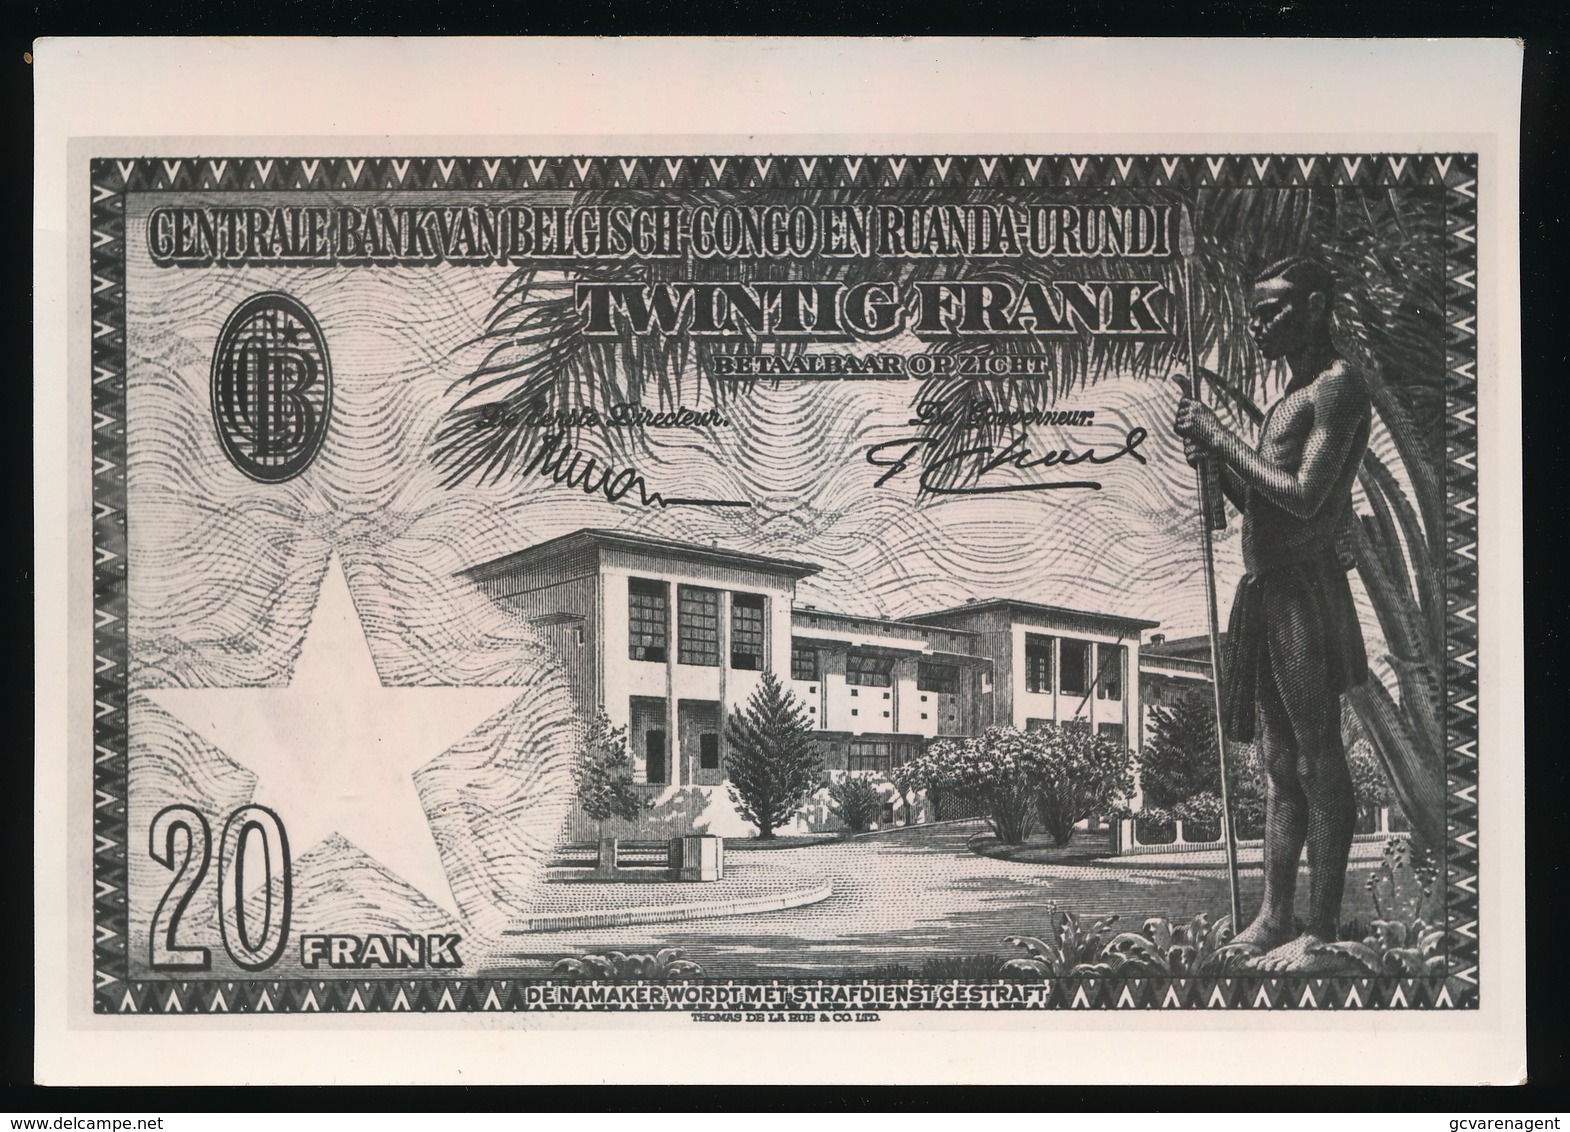 FOTOKAART GENERALE BANK VAN BELGISCH CONGO EN RUANDA URUNDI  TWINTIG FRANK - Monnaies (représentations)